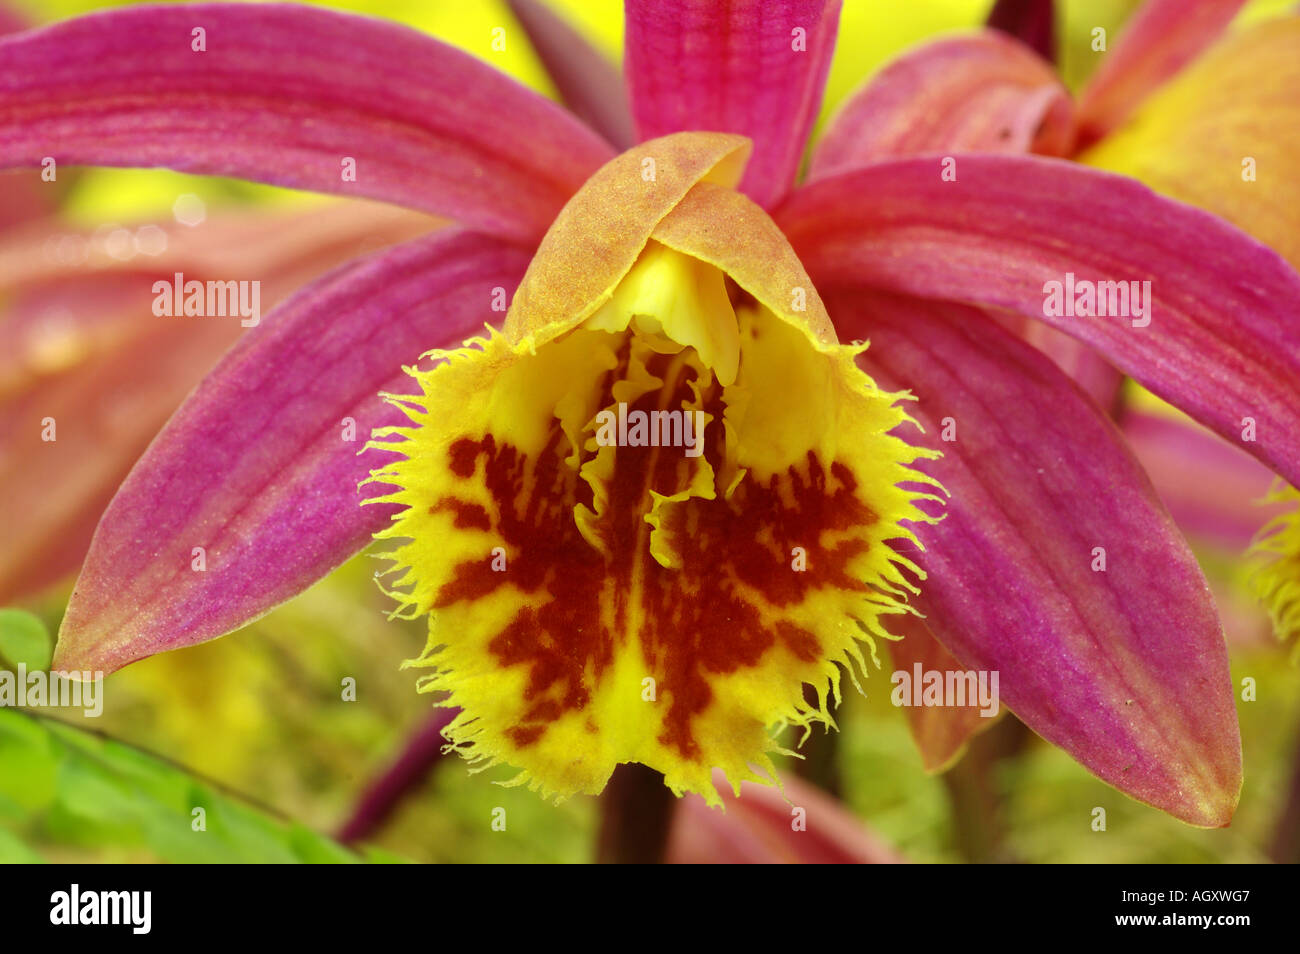 Pleione shot silk, detail of flower Stock Photo